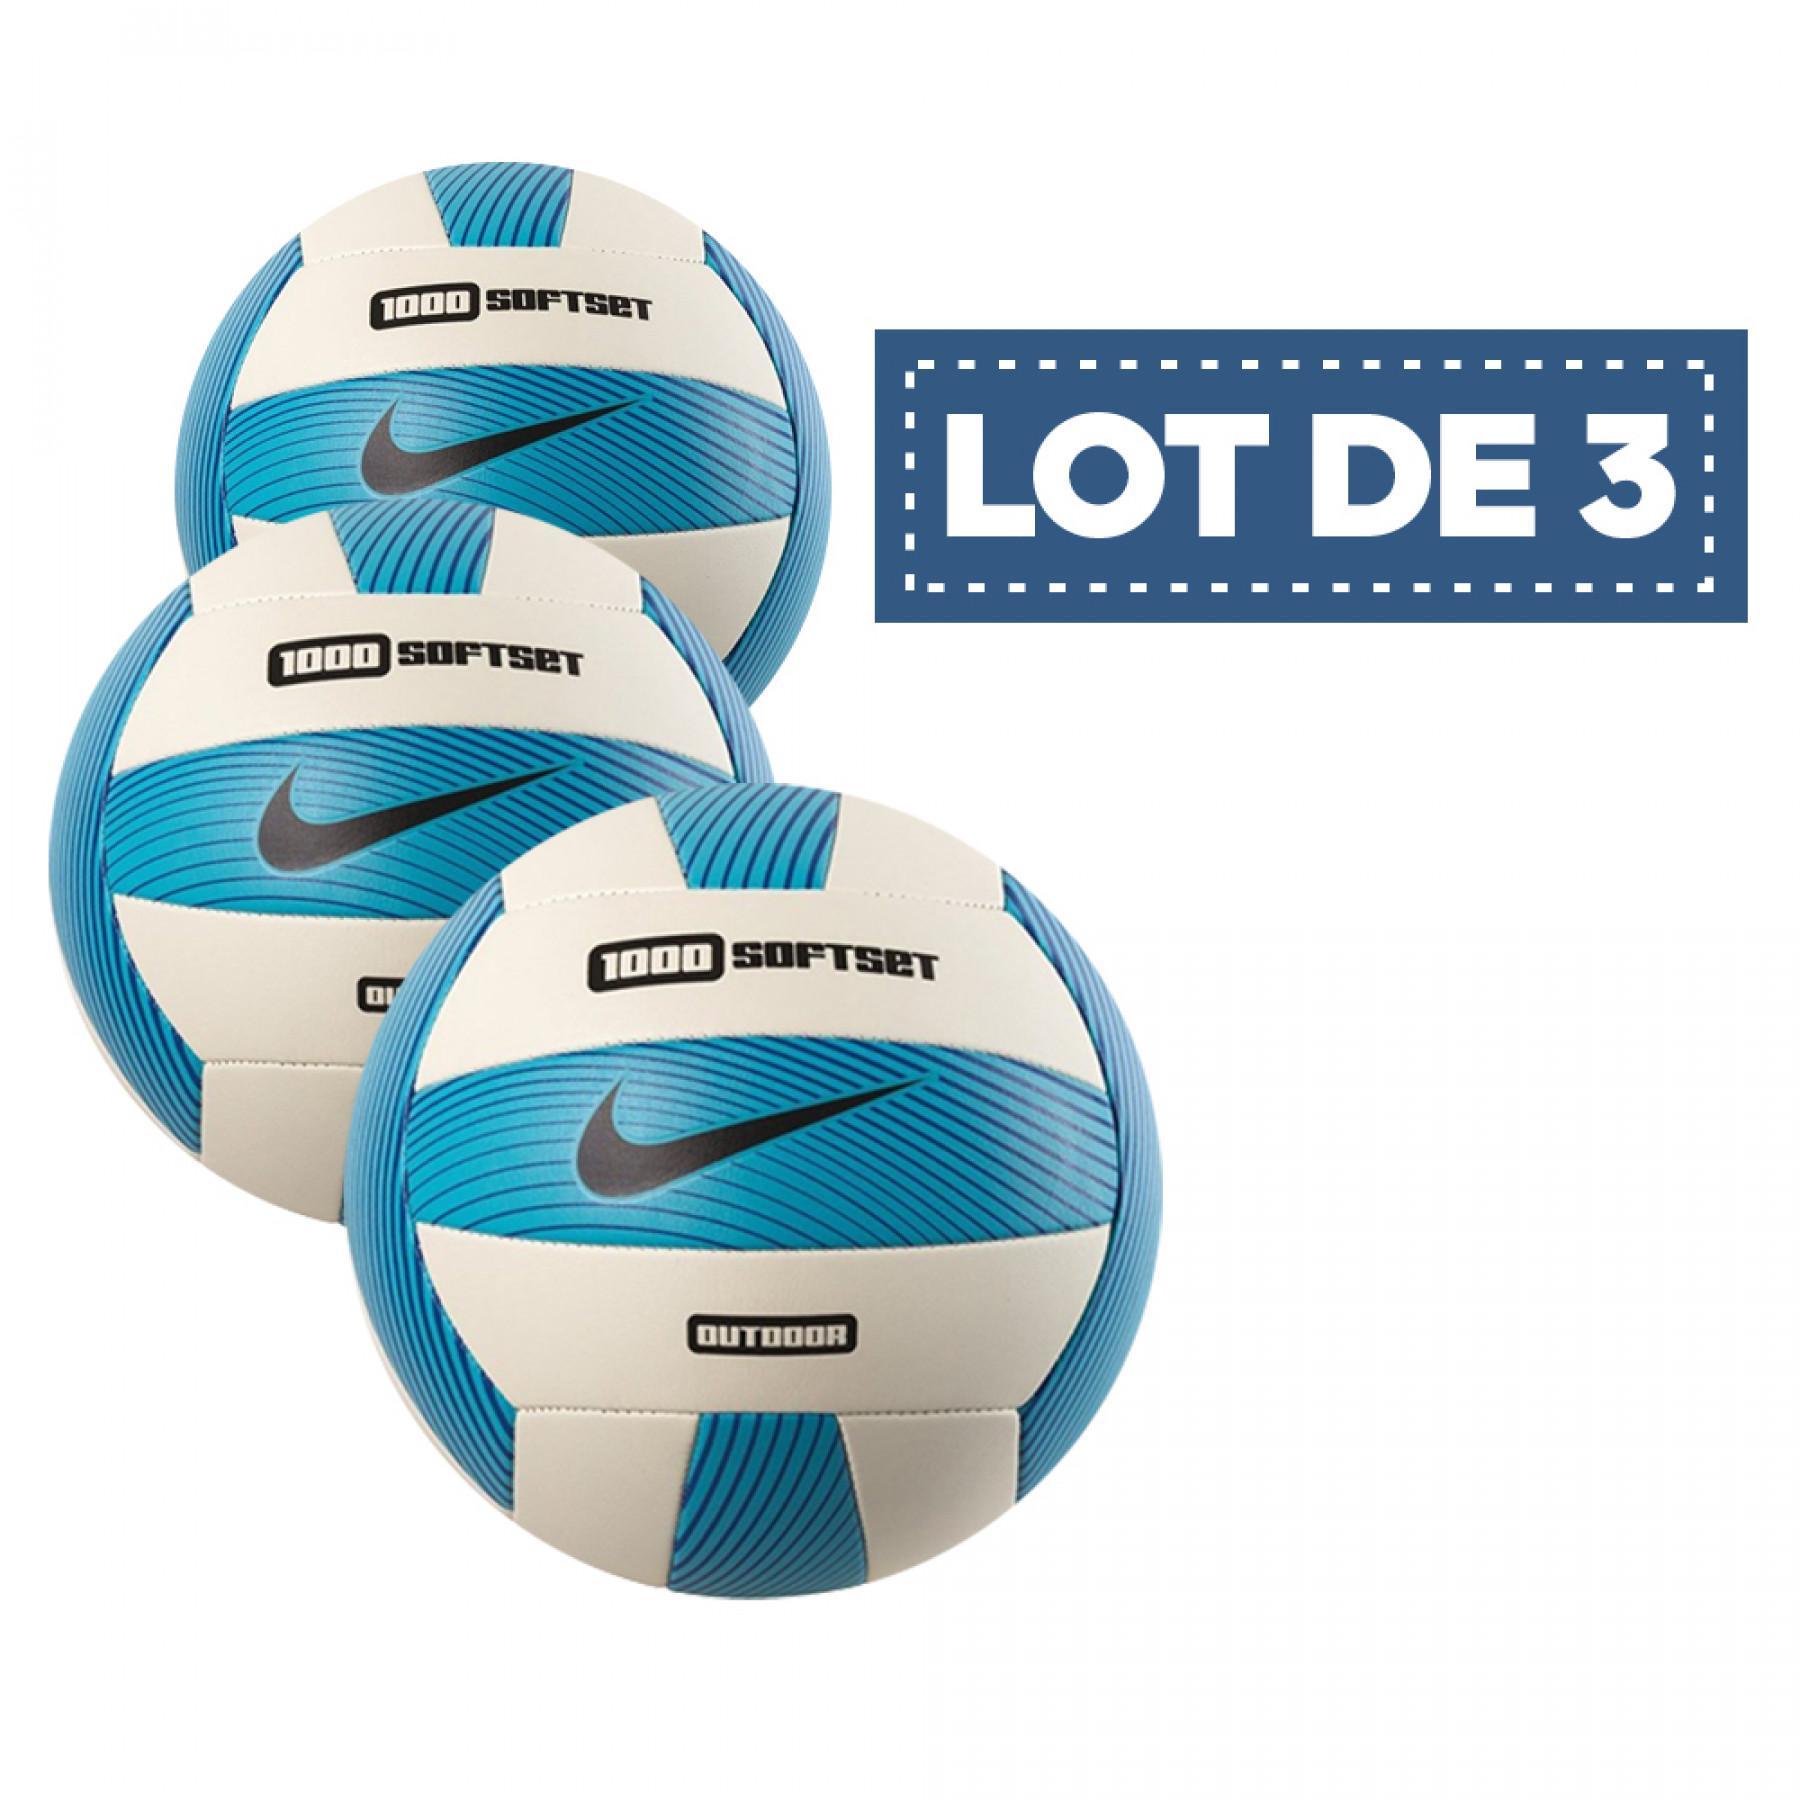 Satz mit 3 Luftballons Nike 1000 softset outdoor bleu/blanc